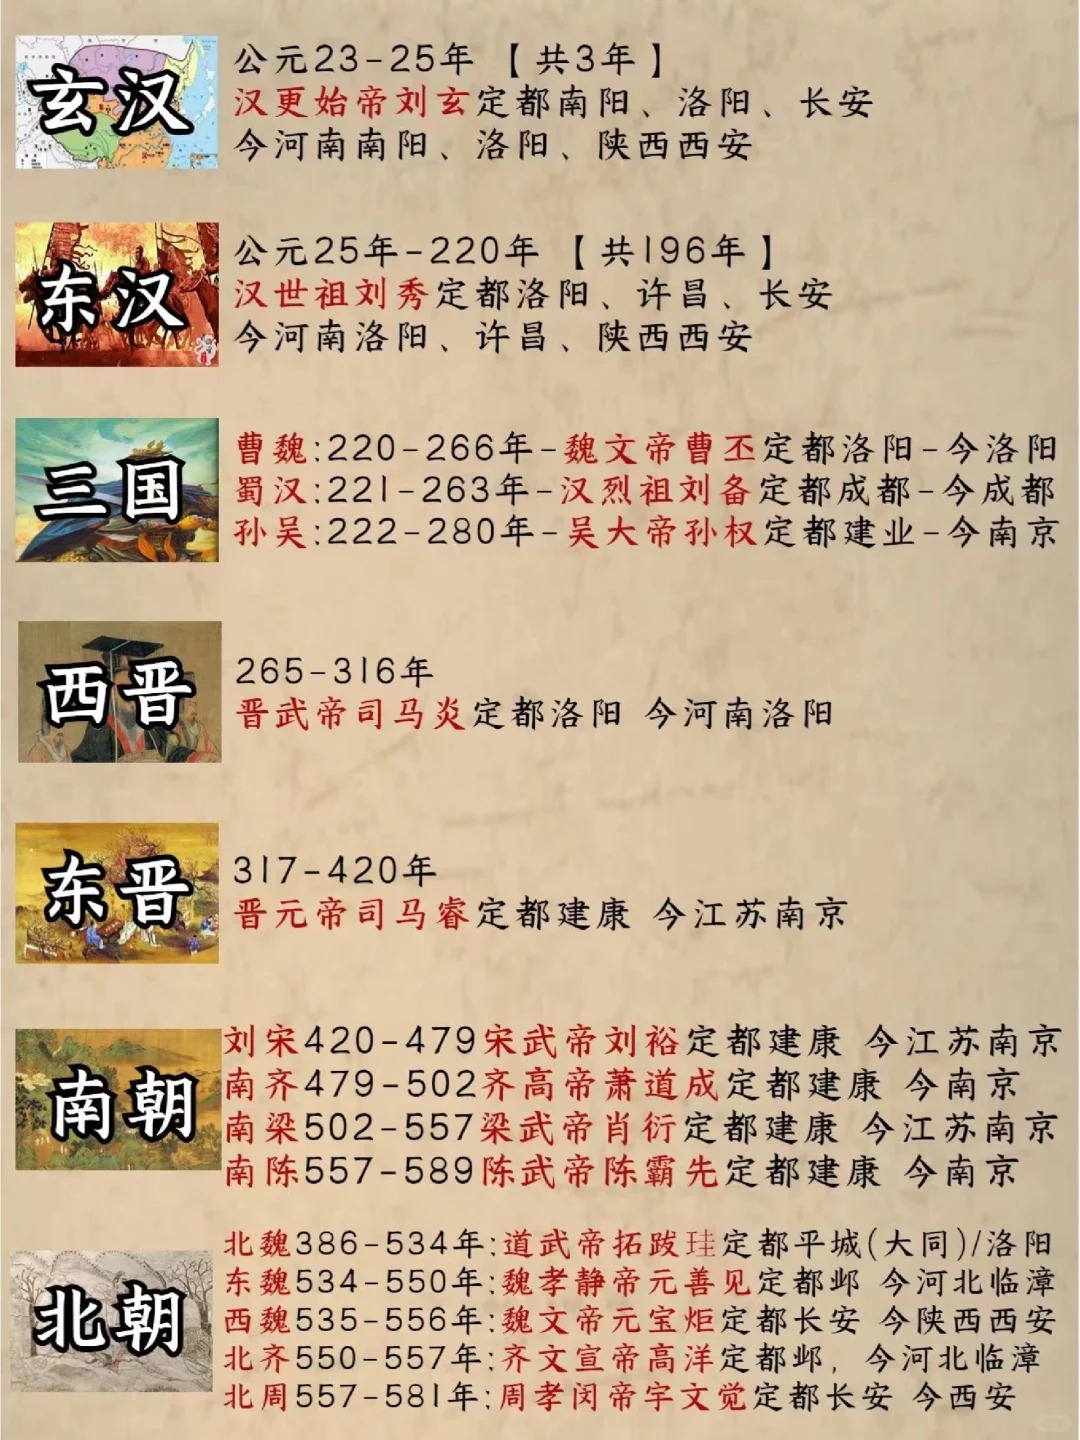 3分钟让孩子看懂中国历史朝代顺序